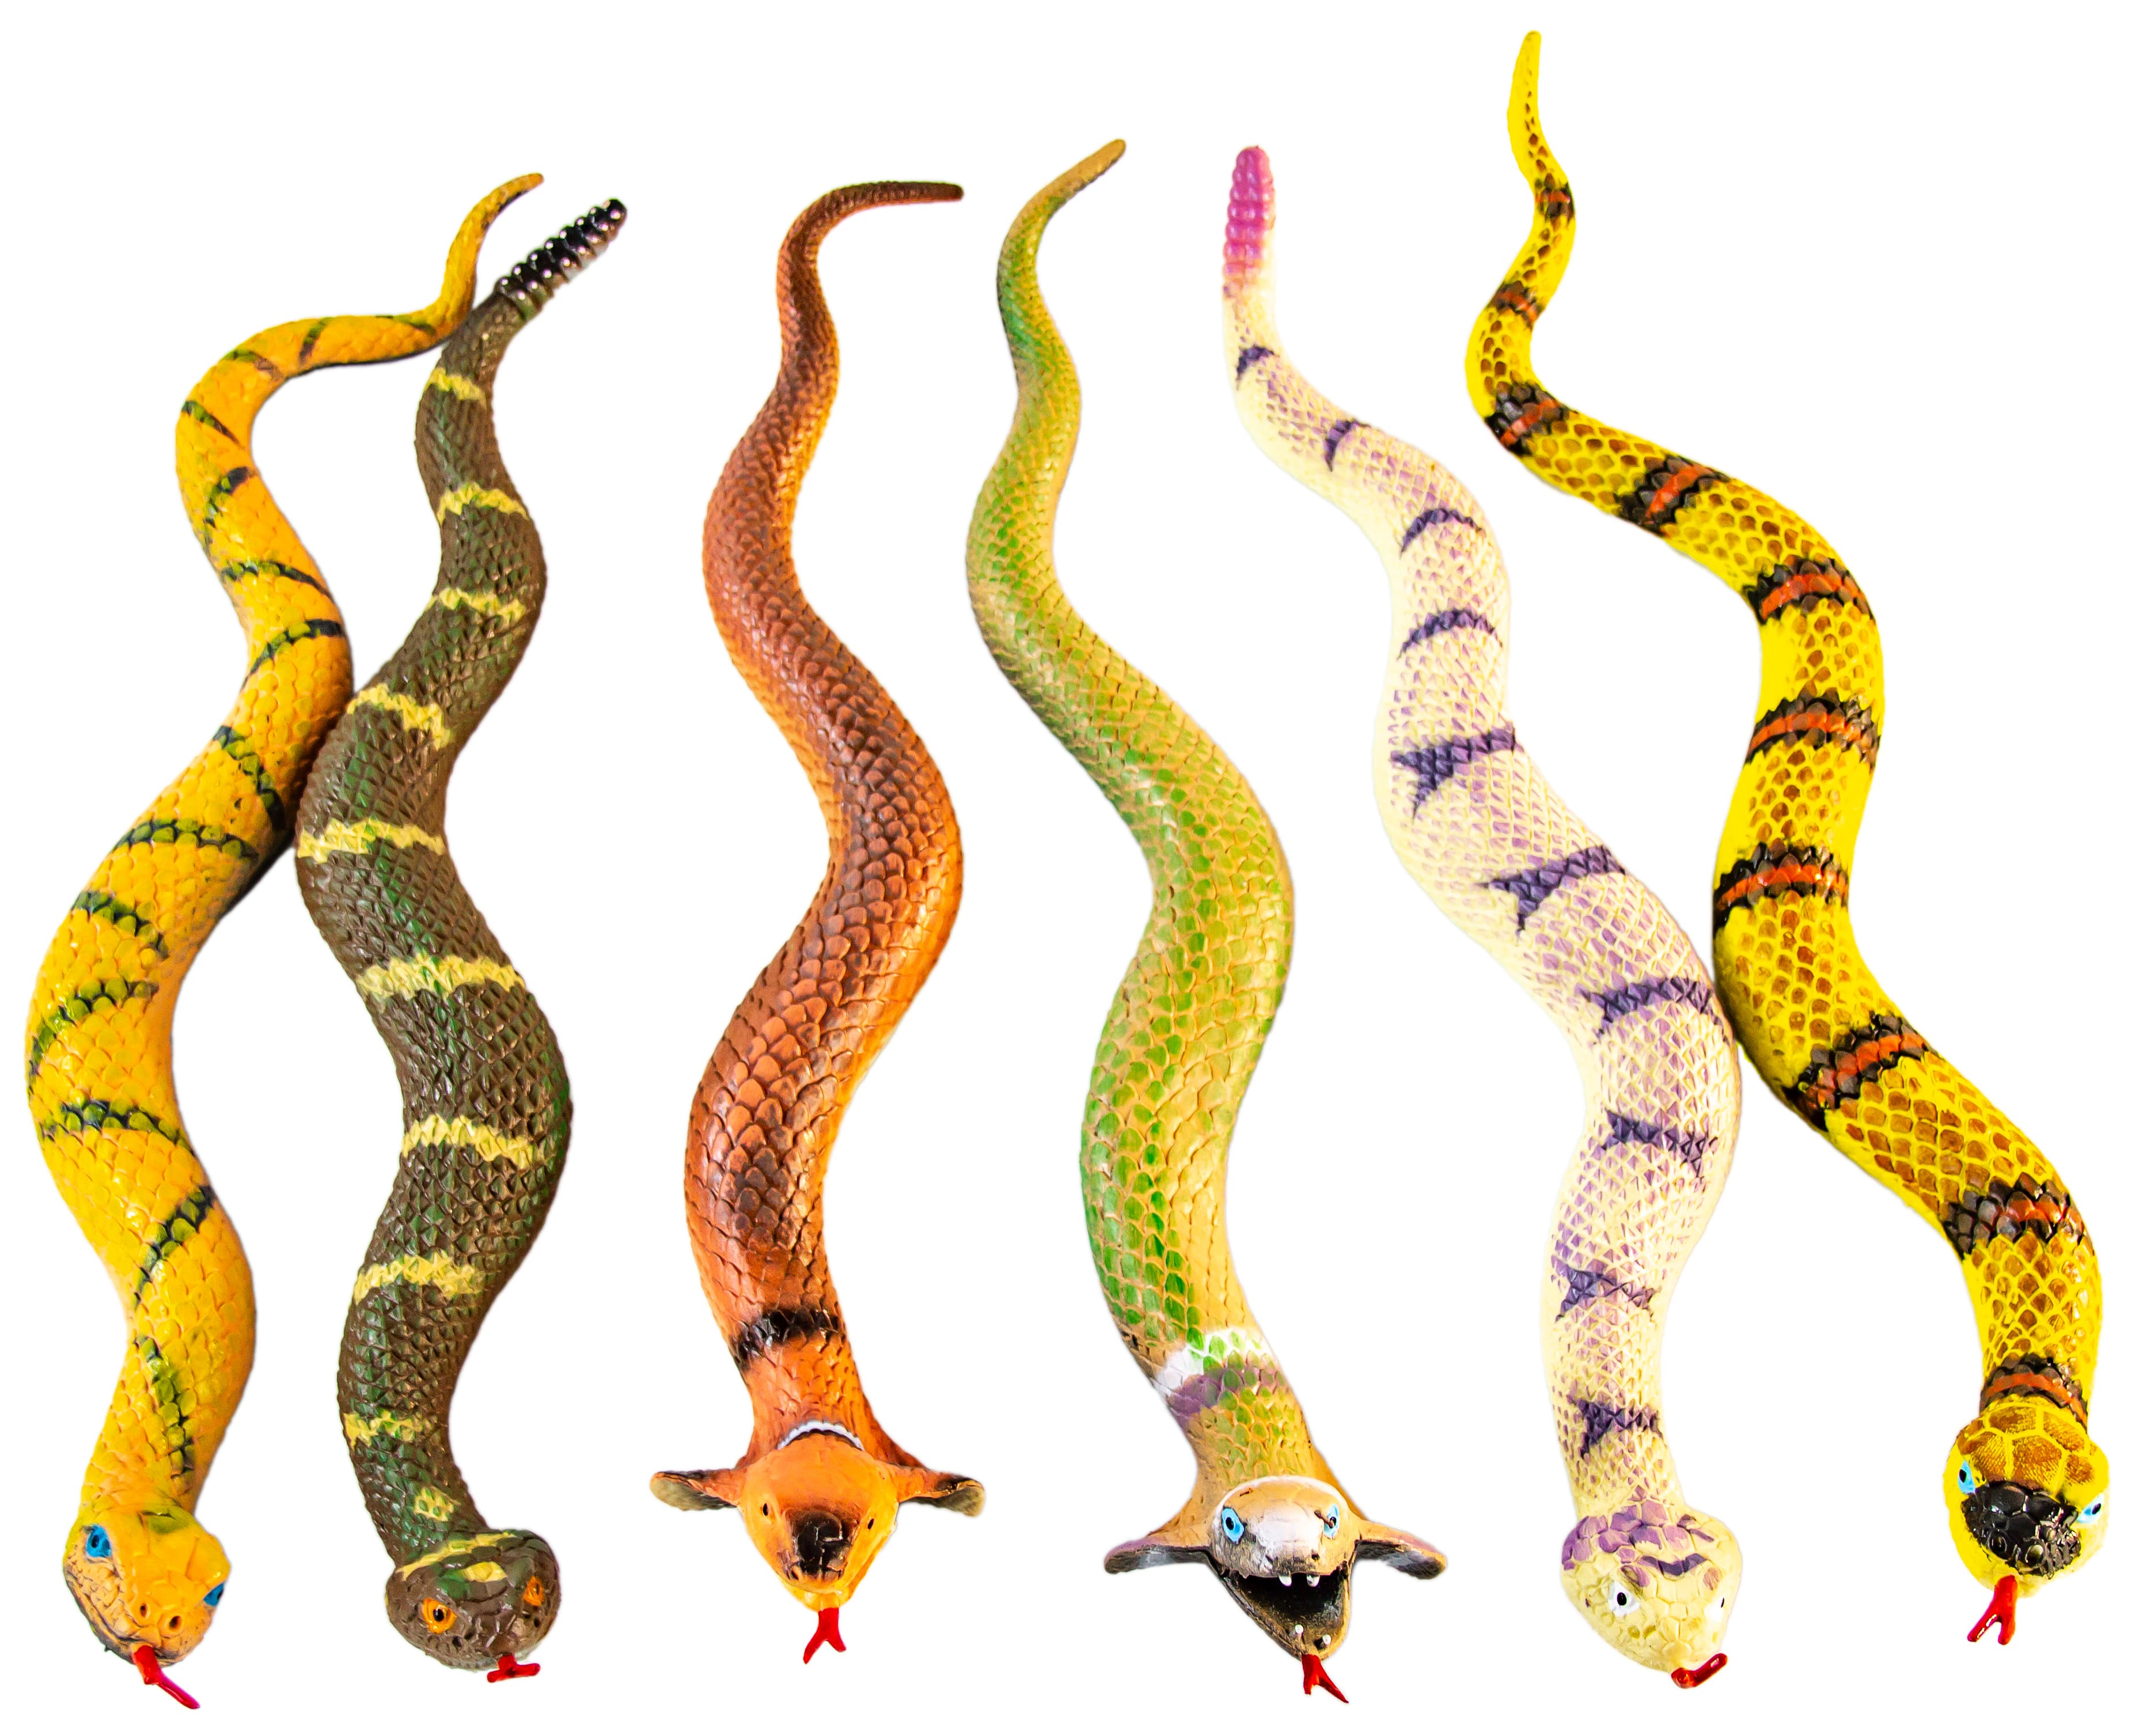 Игрушки резиновые фигурки-тянучки «Змеи» А018Р, 38 см. Антистресс / набор 6 шт